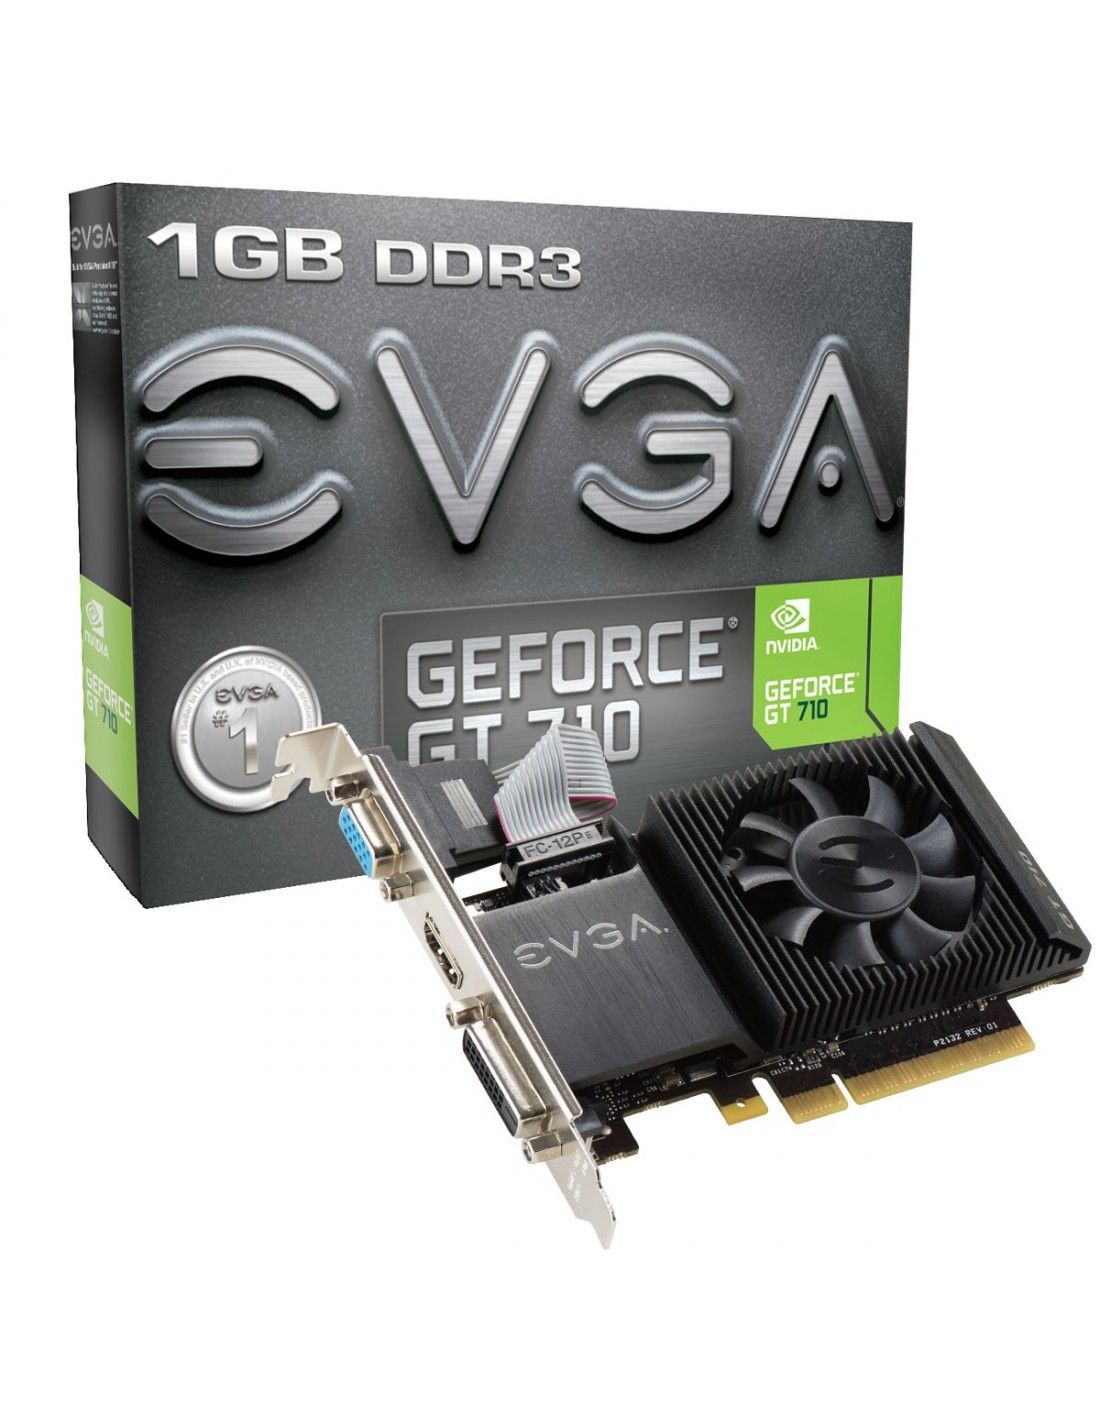 Vacilar Investigación sentar EVGA 01G-P3-2711-KR tarjeta gráfica NVIDIA GeForce GT 710 1 GB GDDR3